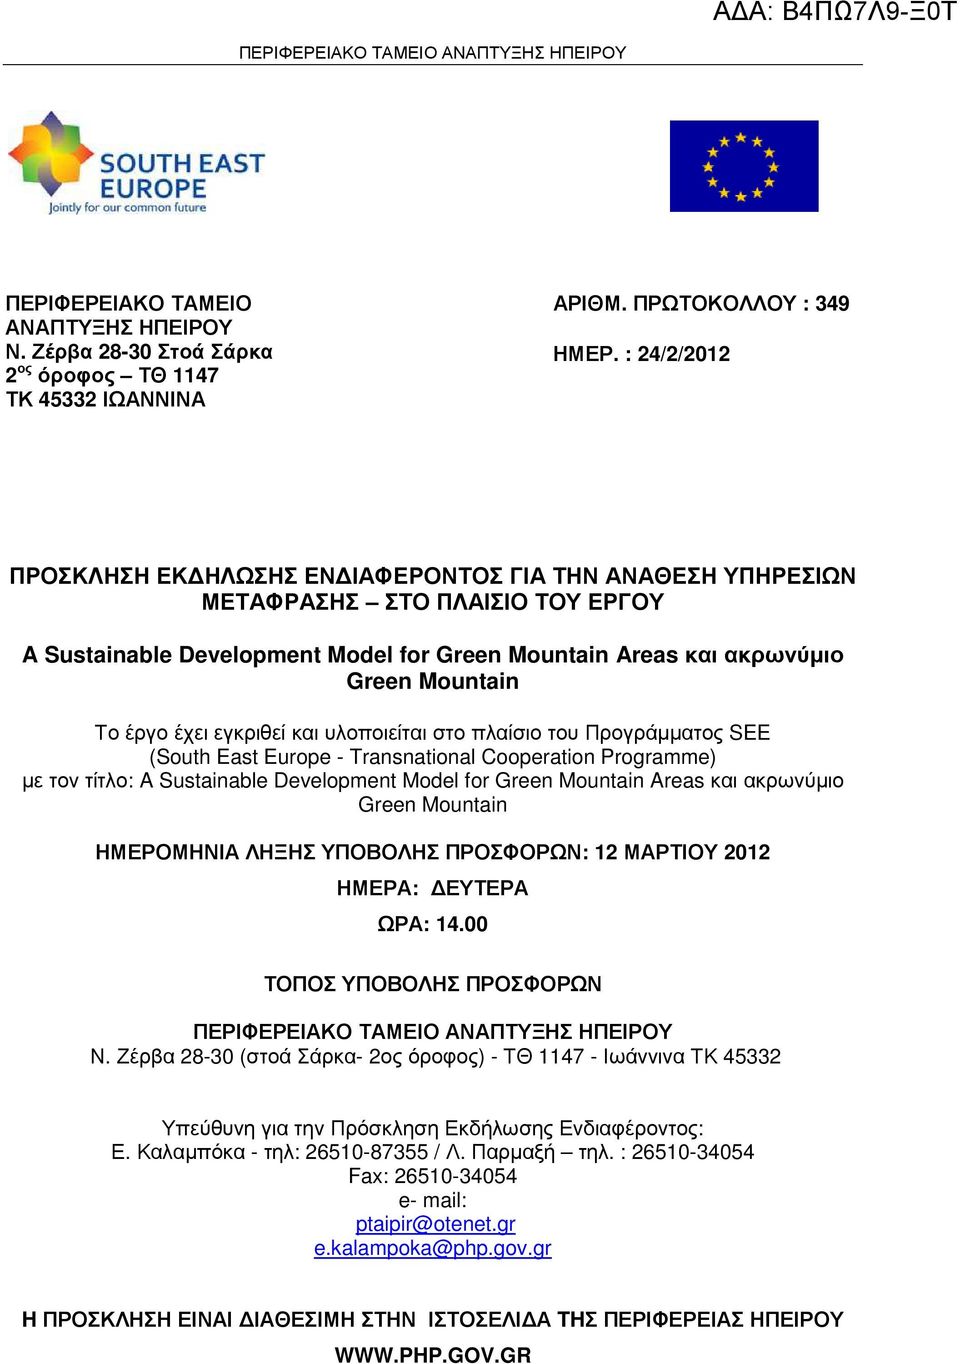 έχει εγκριθεί και υλοποιείται στο πλαίσιο του Προγράµµατος SEE (South East Europe - Transnational Cooperation Programme) µε τον τίτλο: A Sustainable Development Model for Green Mountain Areas και